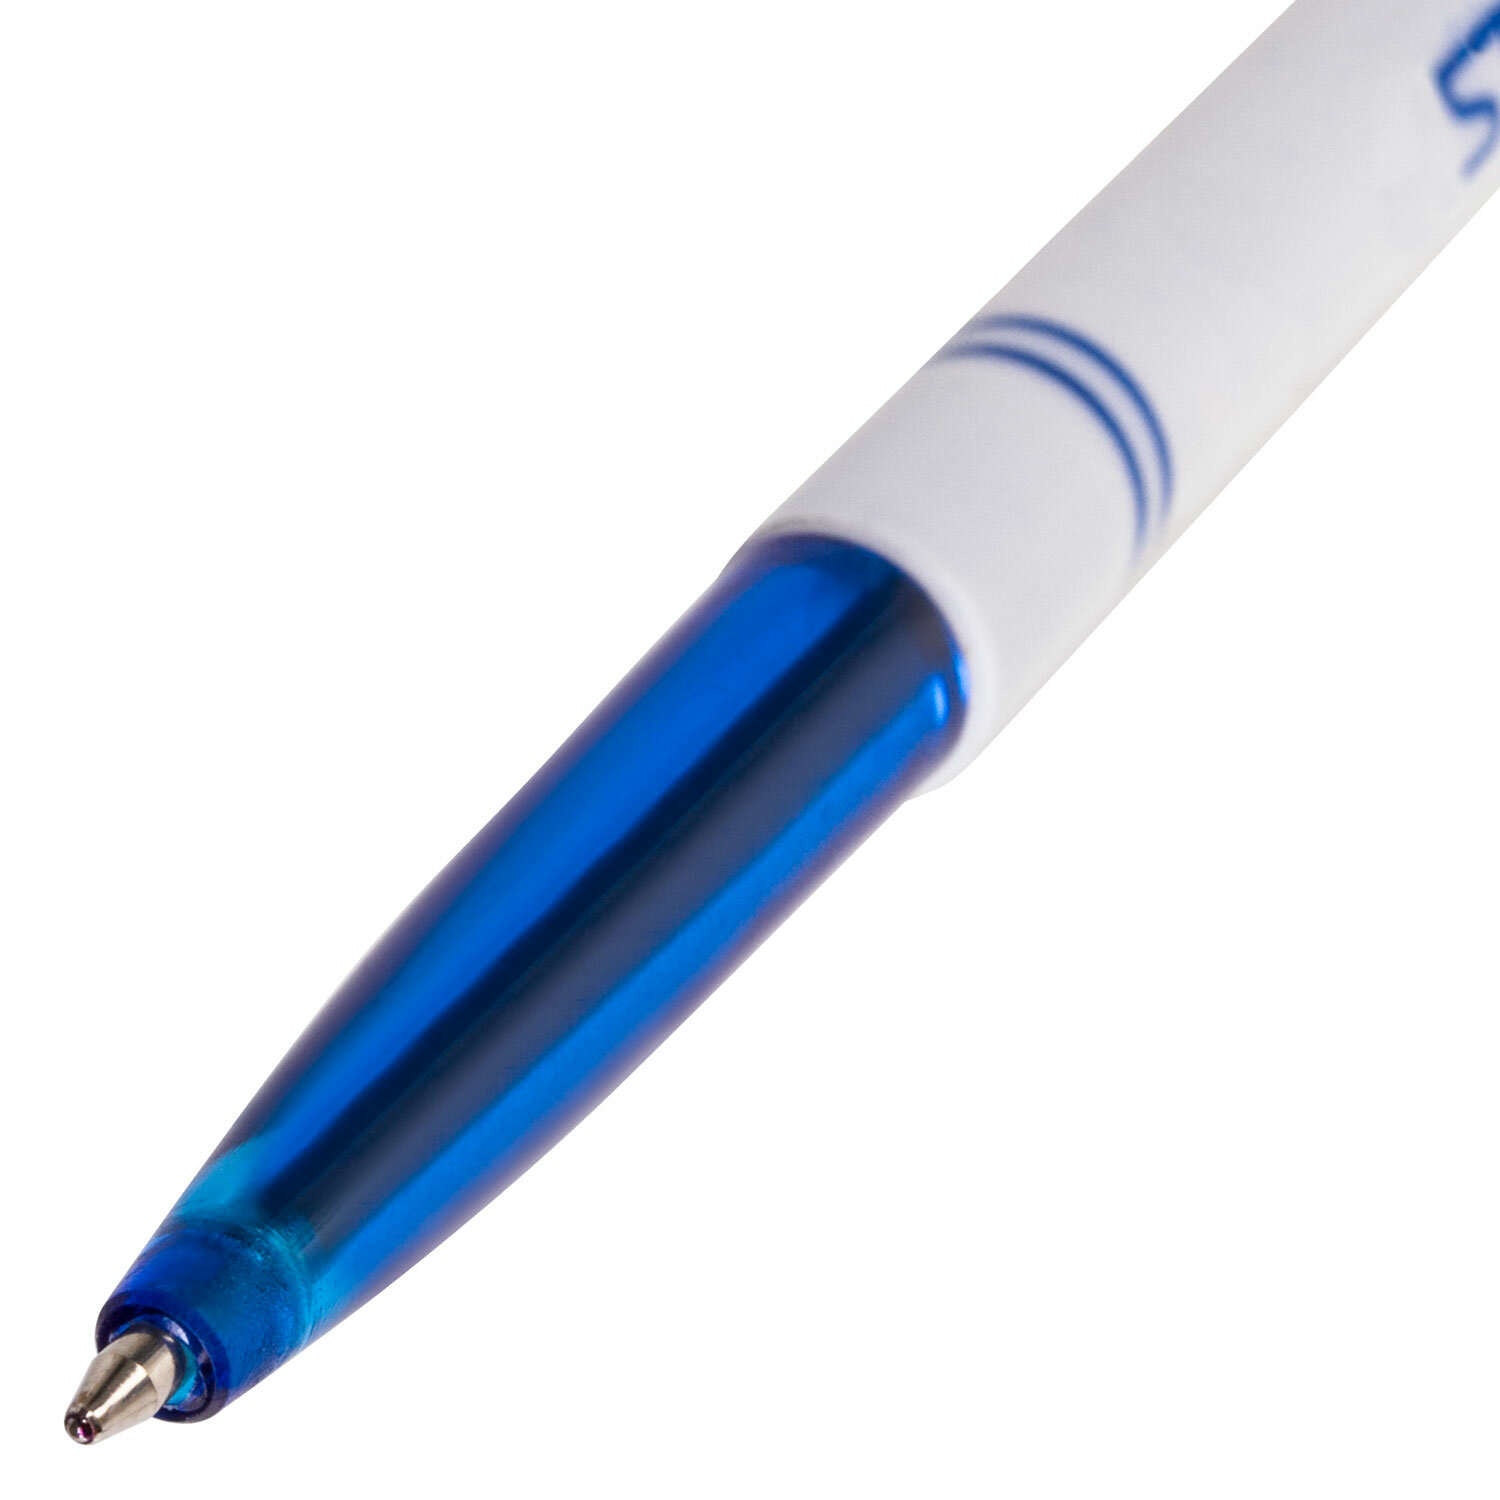 Ручка шариковая STAFF Офисная, корпус белый, пишущий узел 0,7мм, линия письма 0,35мм, синяя, 142286